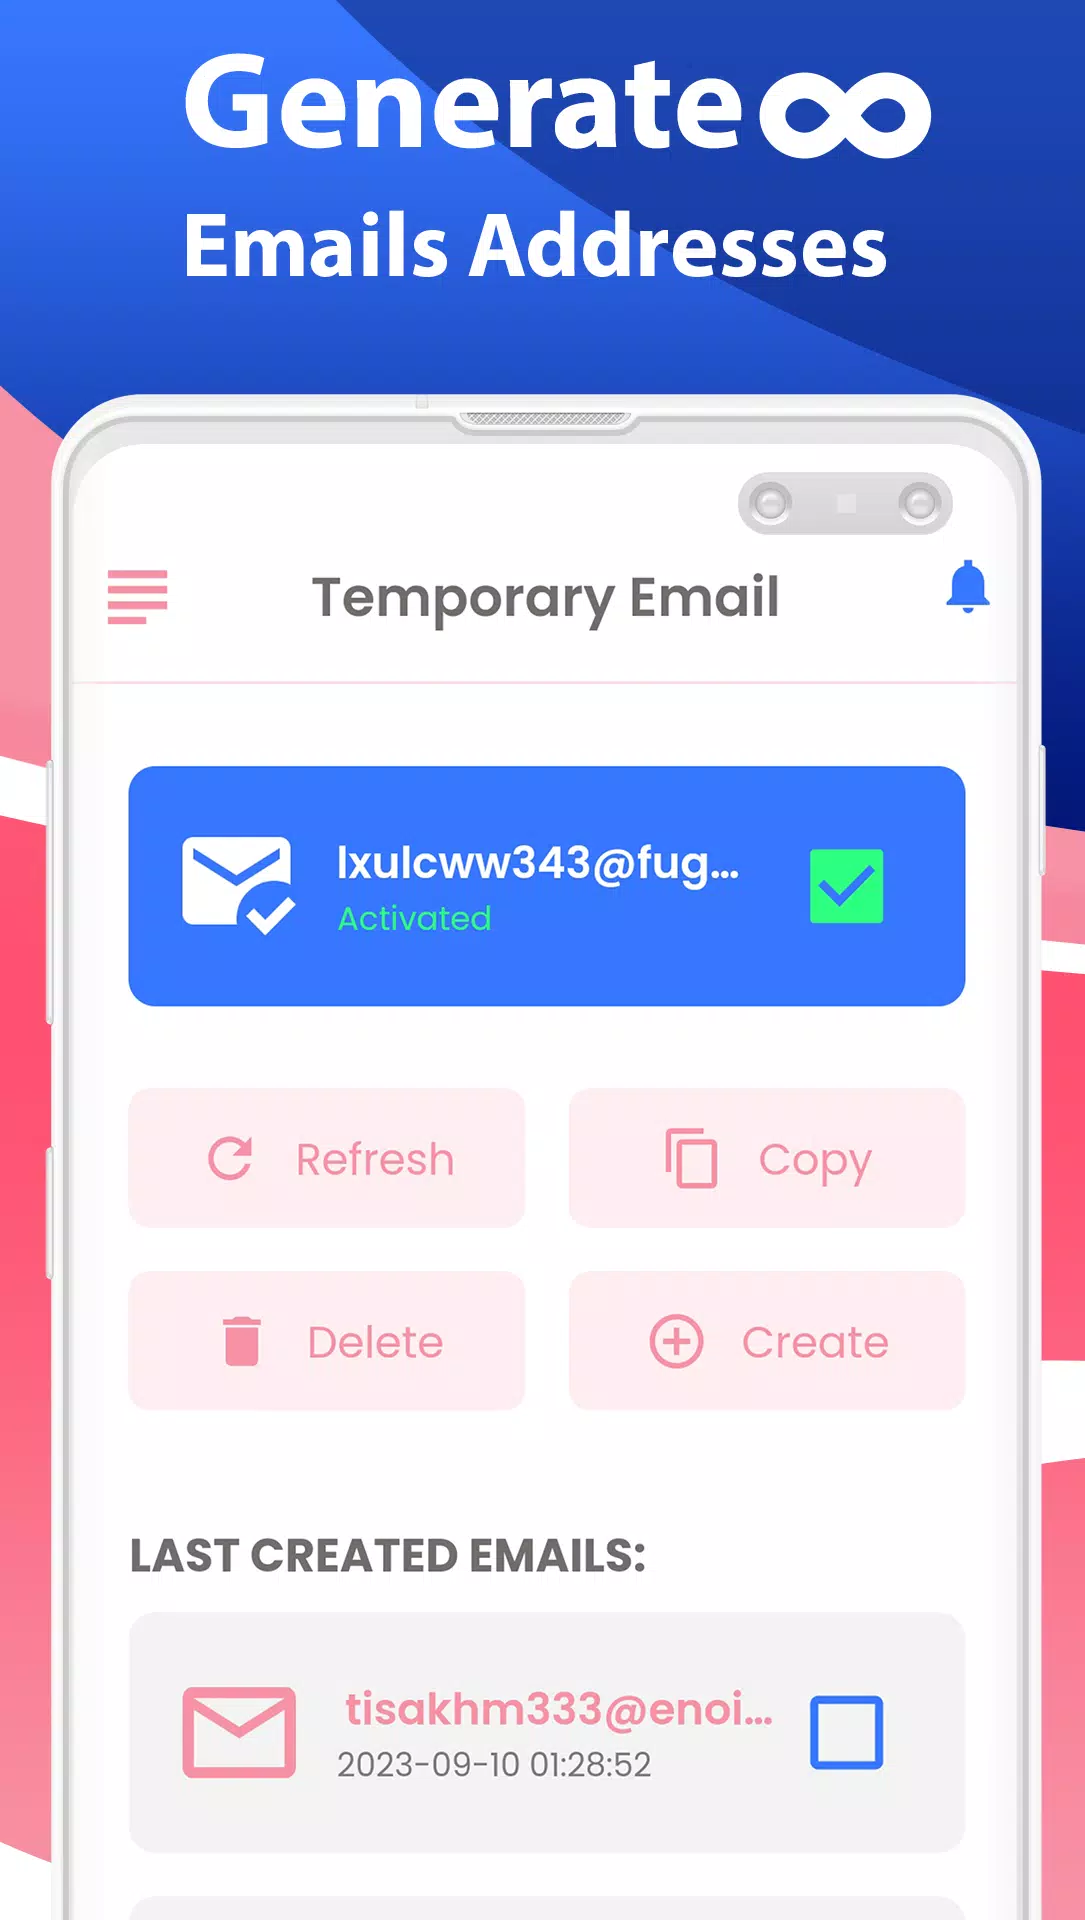 Download do APK de T Mail - E-mail Temporário para Android